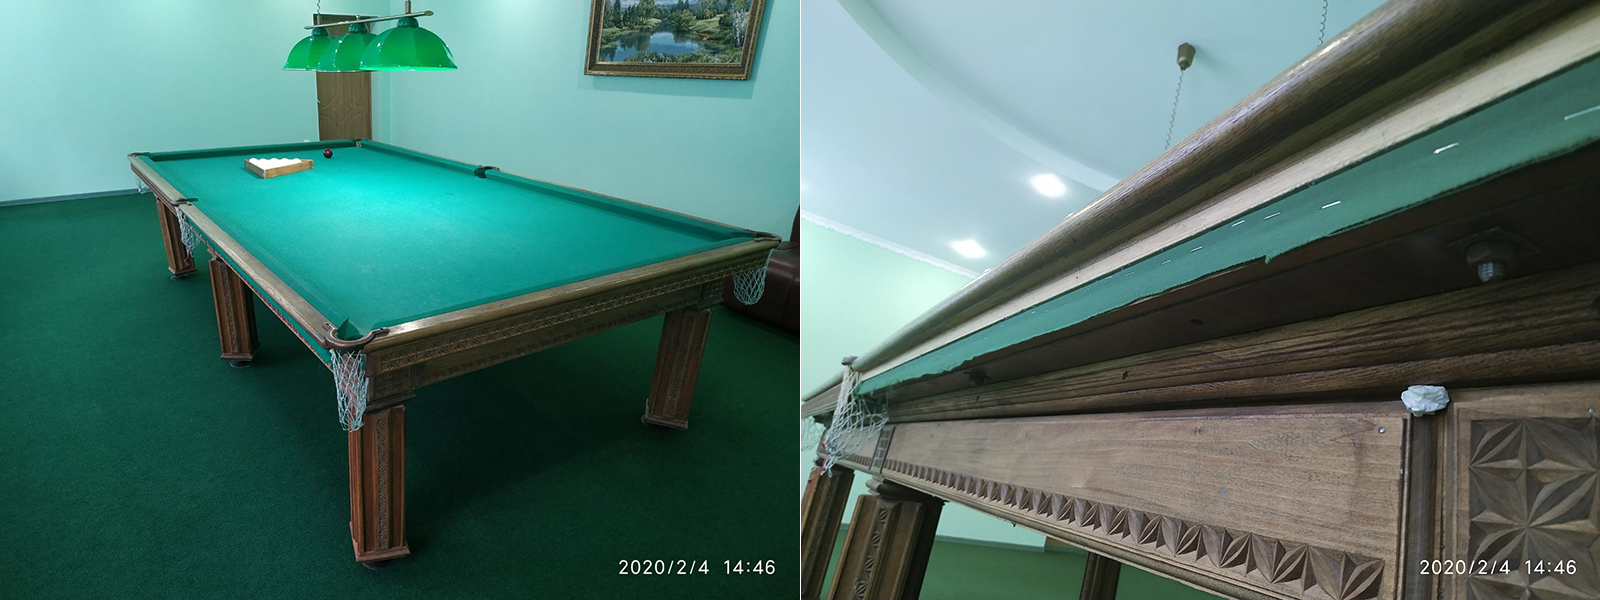 Перетяжка бильярдного стола в Крыму - расчет стоимости по фото